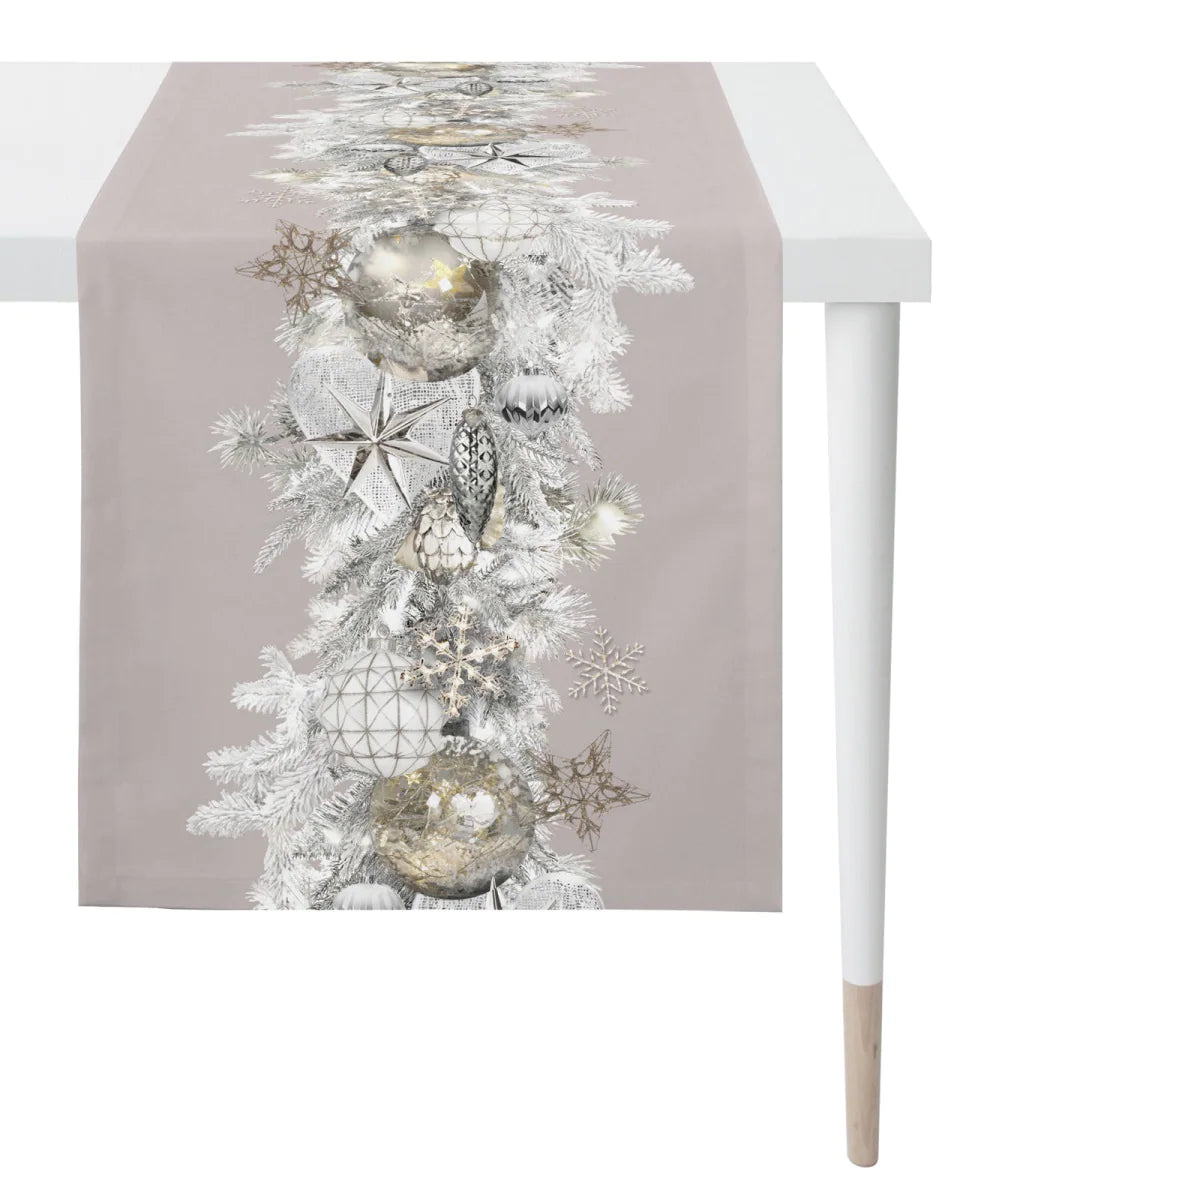 Apelt Tischläufer Christmas Elegance 46x135cm » Sicher bestellen | Mitteldecken